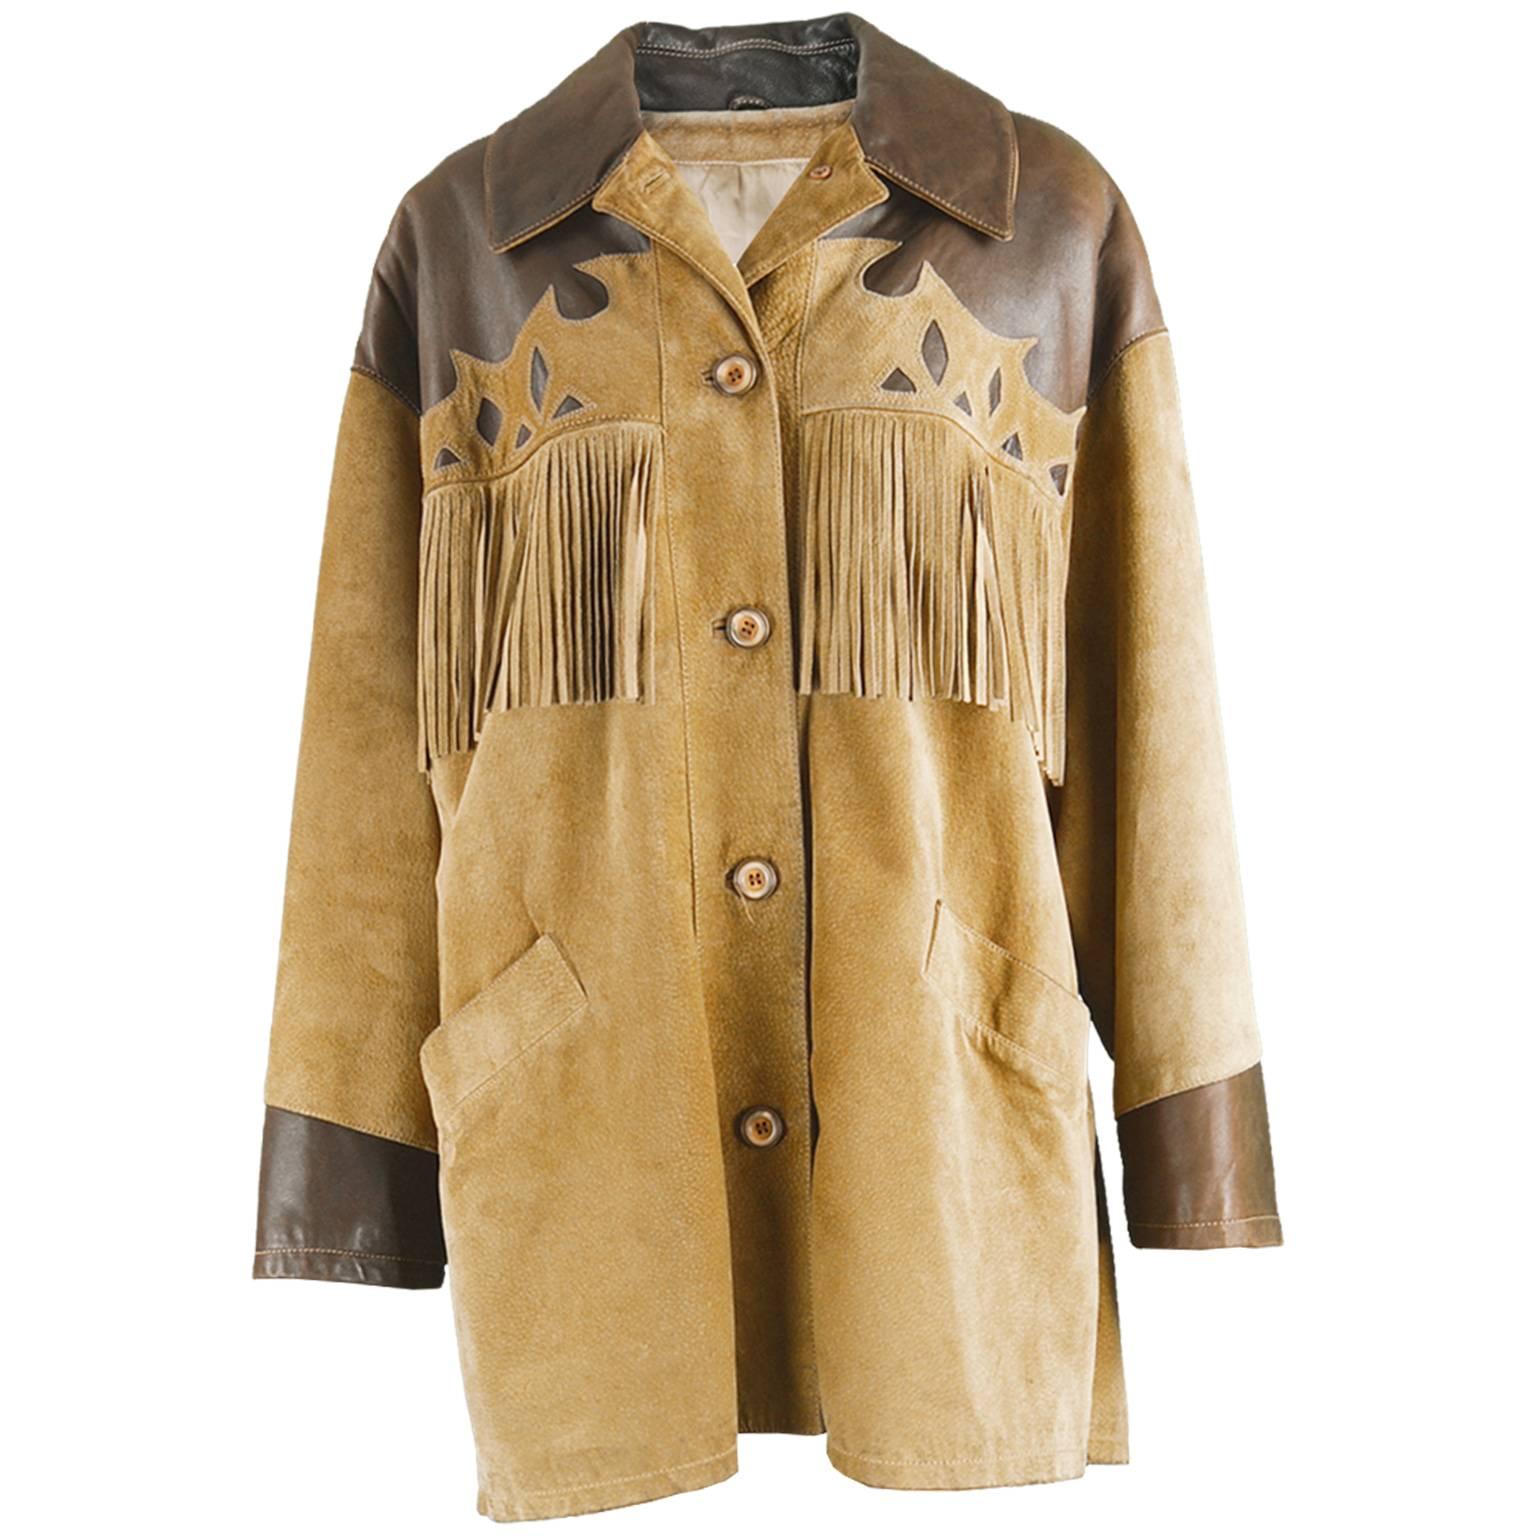 Byblos Italian Leather & Suede Oversized Western Style Fringed Jacket, 1980s